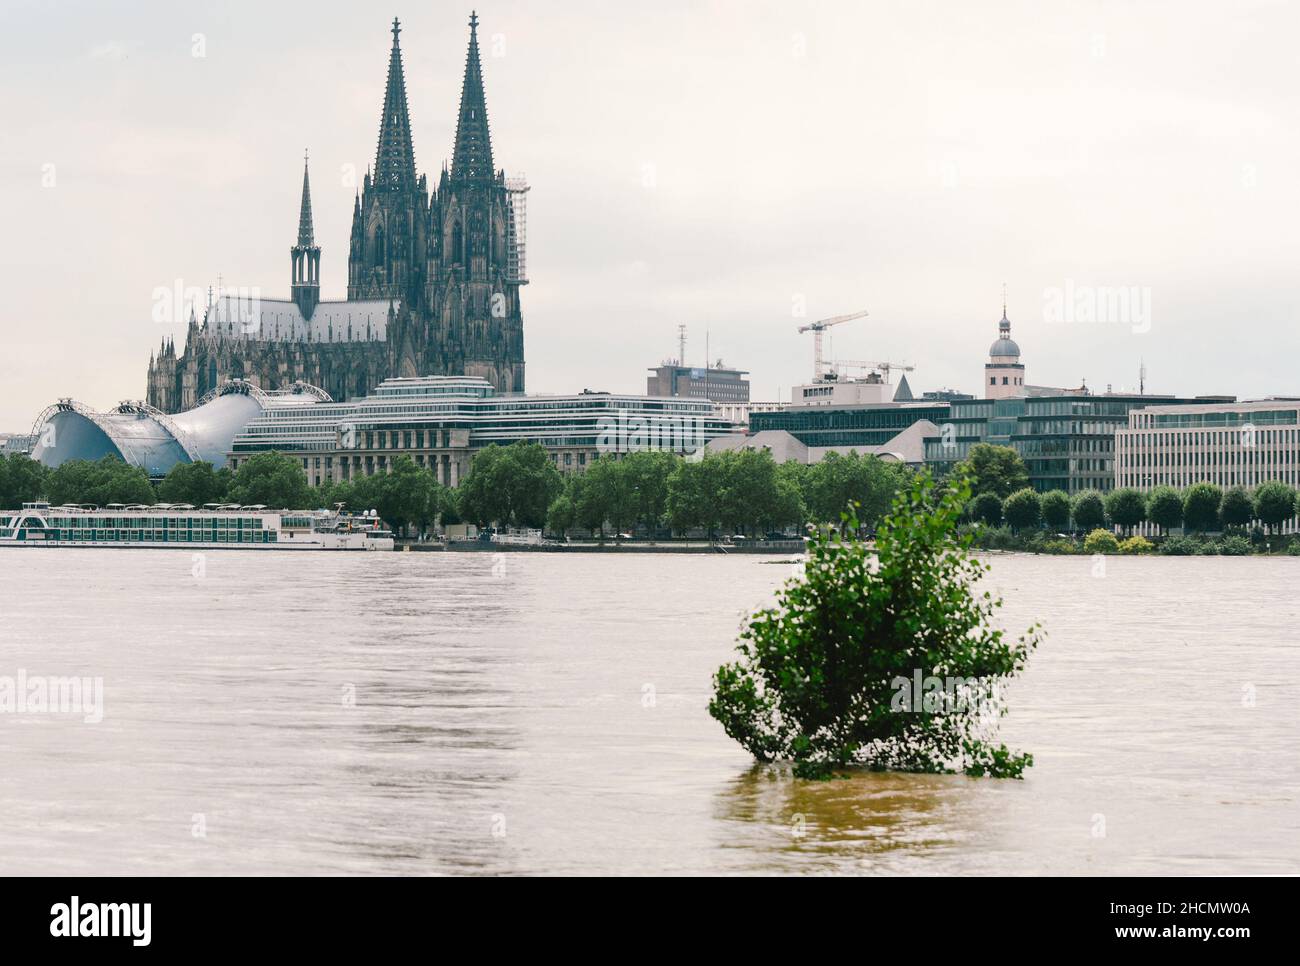 (211230) -- PEKING, 30. Dezember 2021 (Xinhua) -- am 15. Juli 2021 wird das Rheinufer in Köln überflutet. Xinhuas Top-10-Weltnachrichten-Ereignisse im Jahr 2021 COP26 in Glasgow enden mit neuem Klimapakt am 13. November endete die 26th. Sitzung der Vertragsstaatenkonferenz (COP26) des UN-Rahmenübereinkommens über Klimaänderungen in Glasgow, Großbritannien, Mit einem neuen globalen Pakt zur Bekämpfung des Klimawandels, der den Weg für eine umfassende und effektive Umsetzung des Pariser Abkommens ebnet. Am Rande der Konferenz gaben China und die Vereinigten Staaten eine gemeinsame d Stockfoto